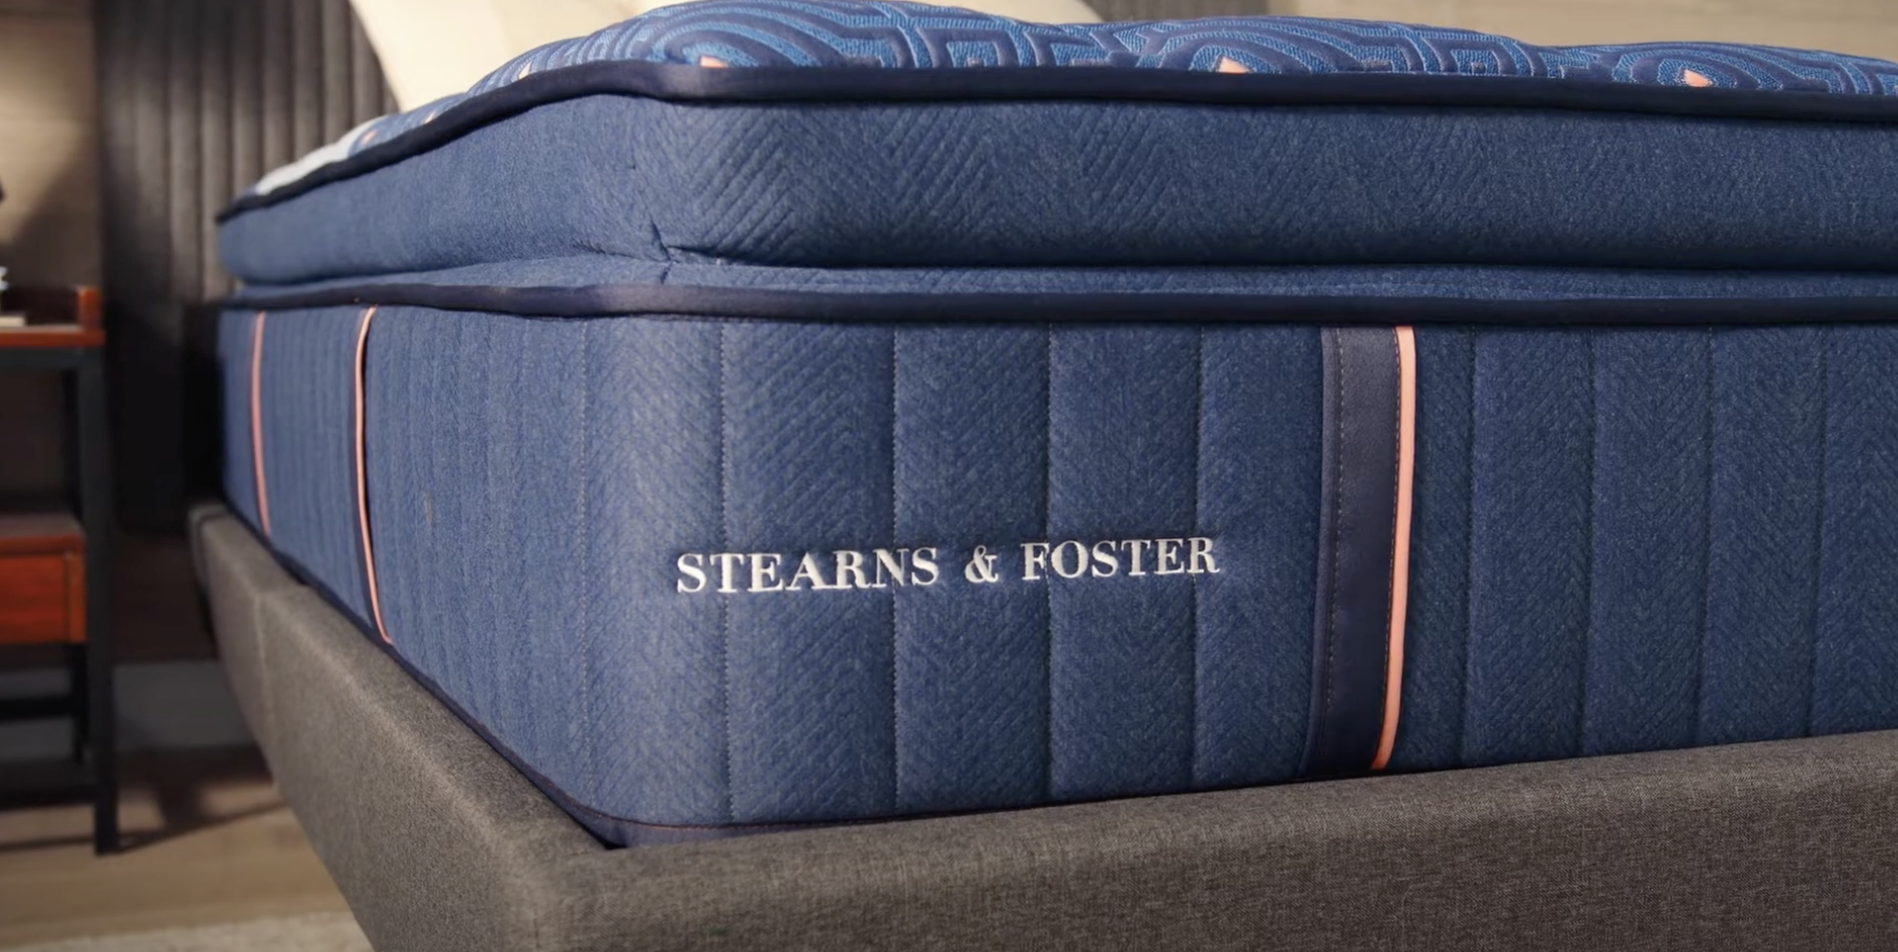 Stearns & Foster mattress